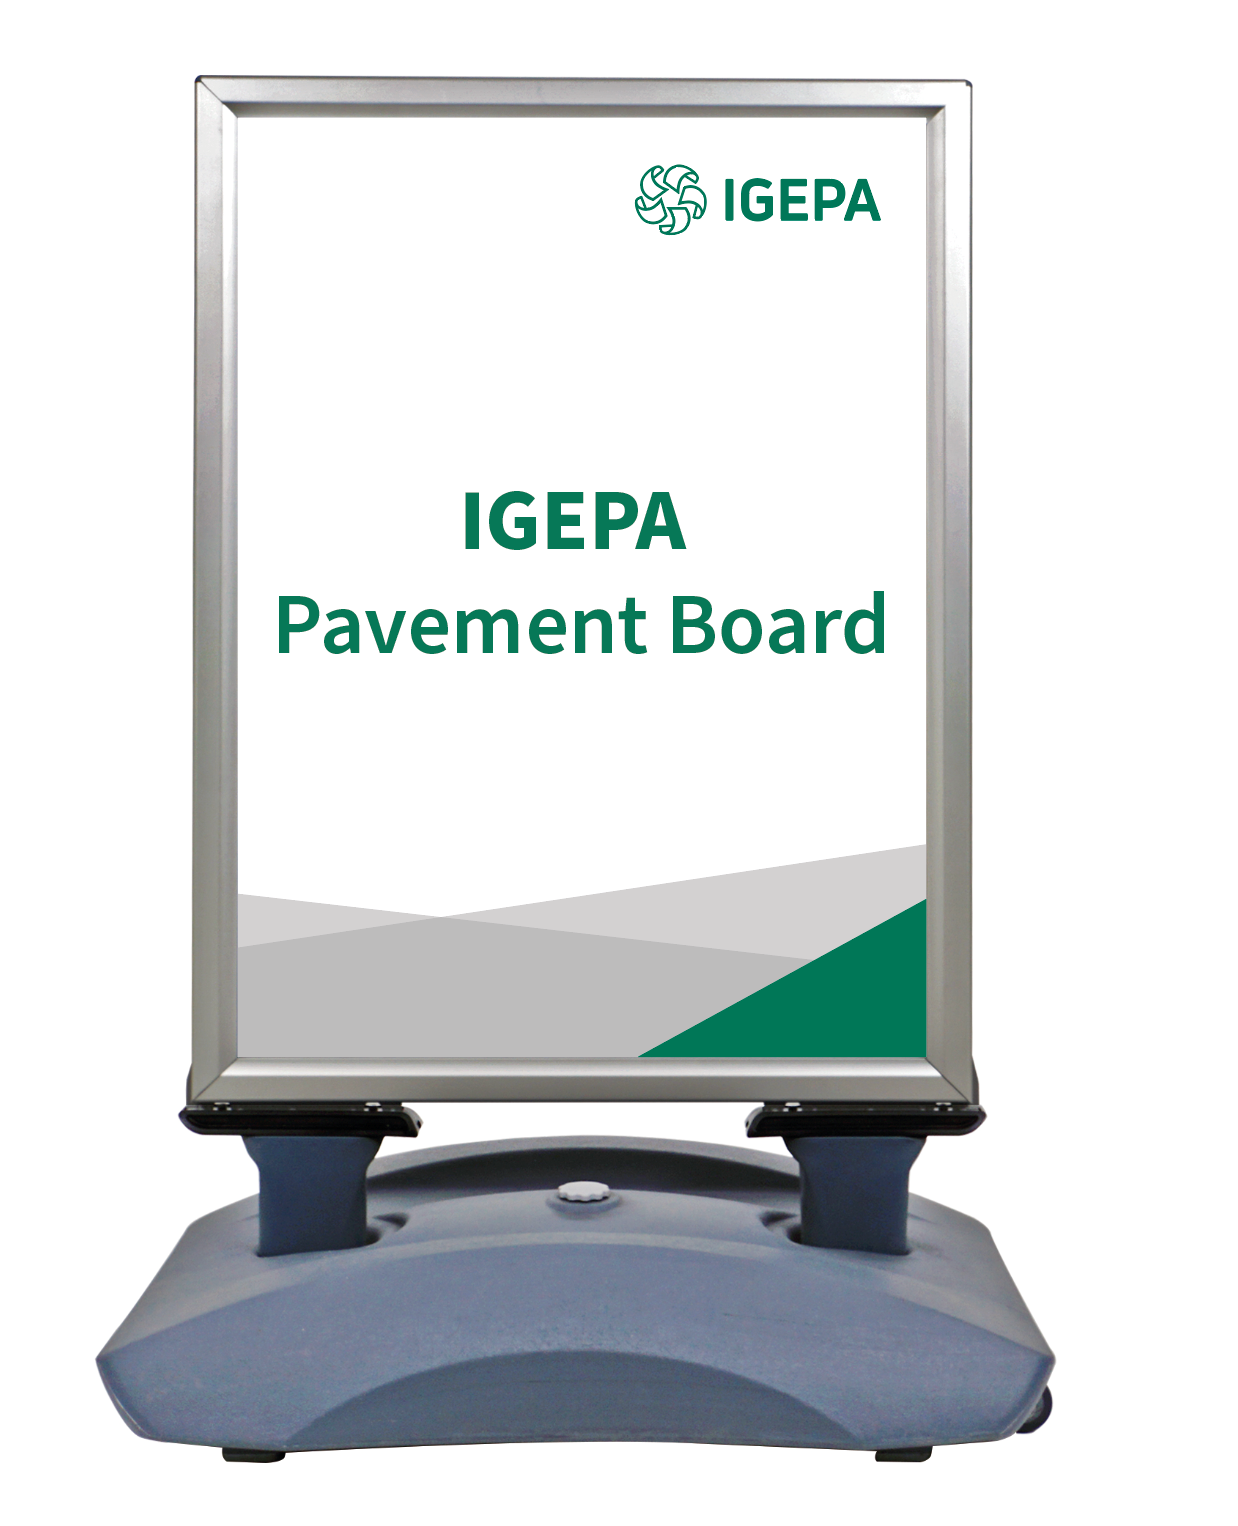 Igepa Pavement Board